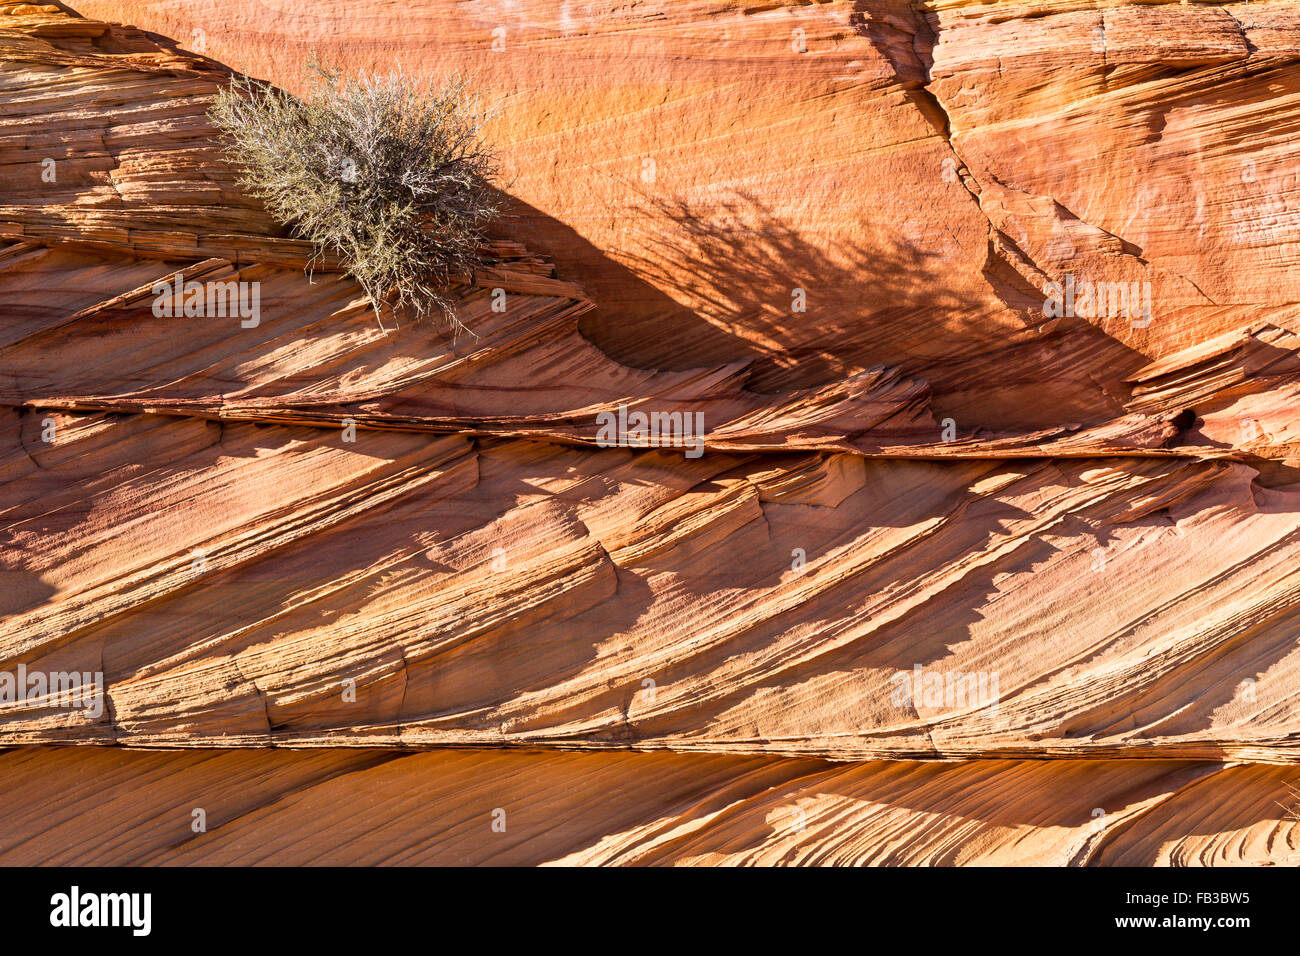 Ein Strauch klammert sich an Schichten aufeinander prallender Gesteinsschichten in der Coyote Buttes South Region, Vermillion Cliffs National Monument, AZ Stockfoto